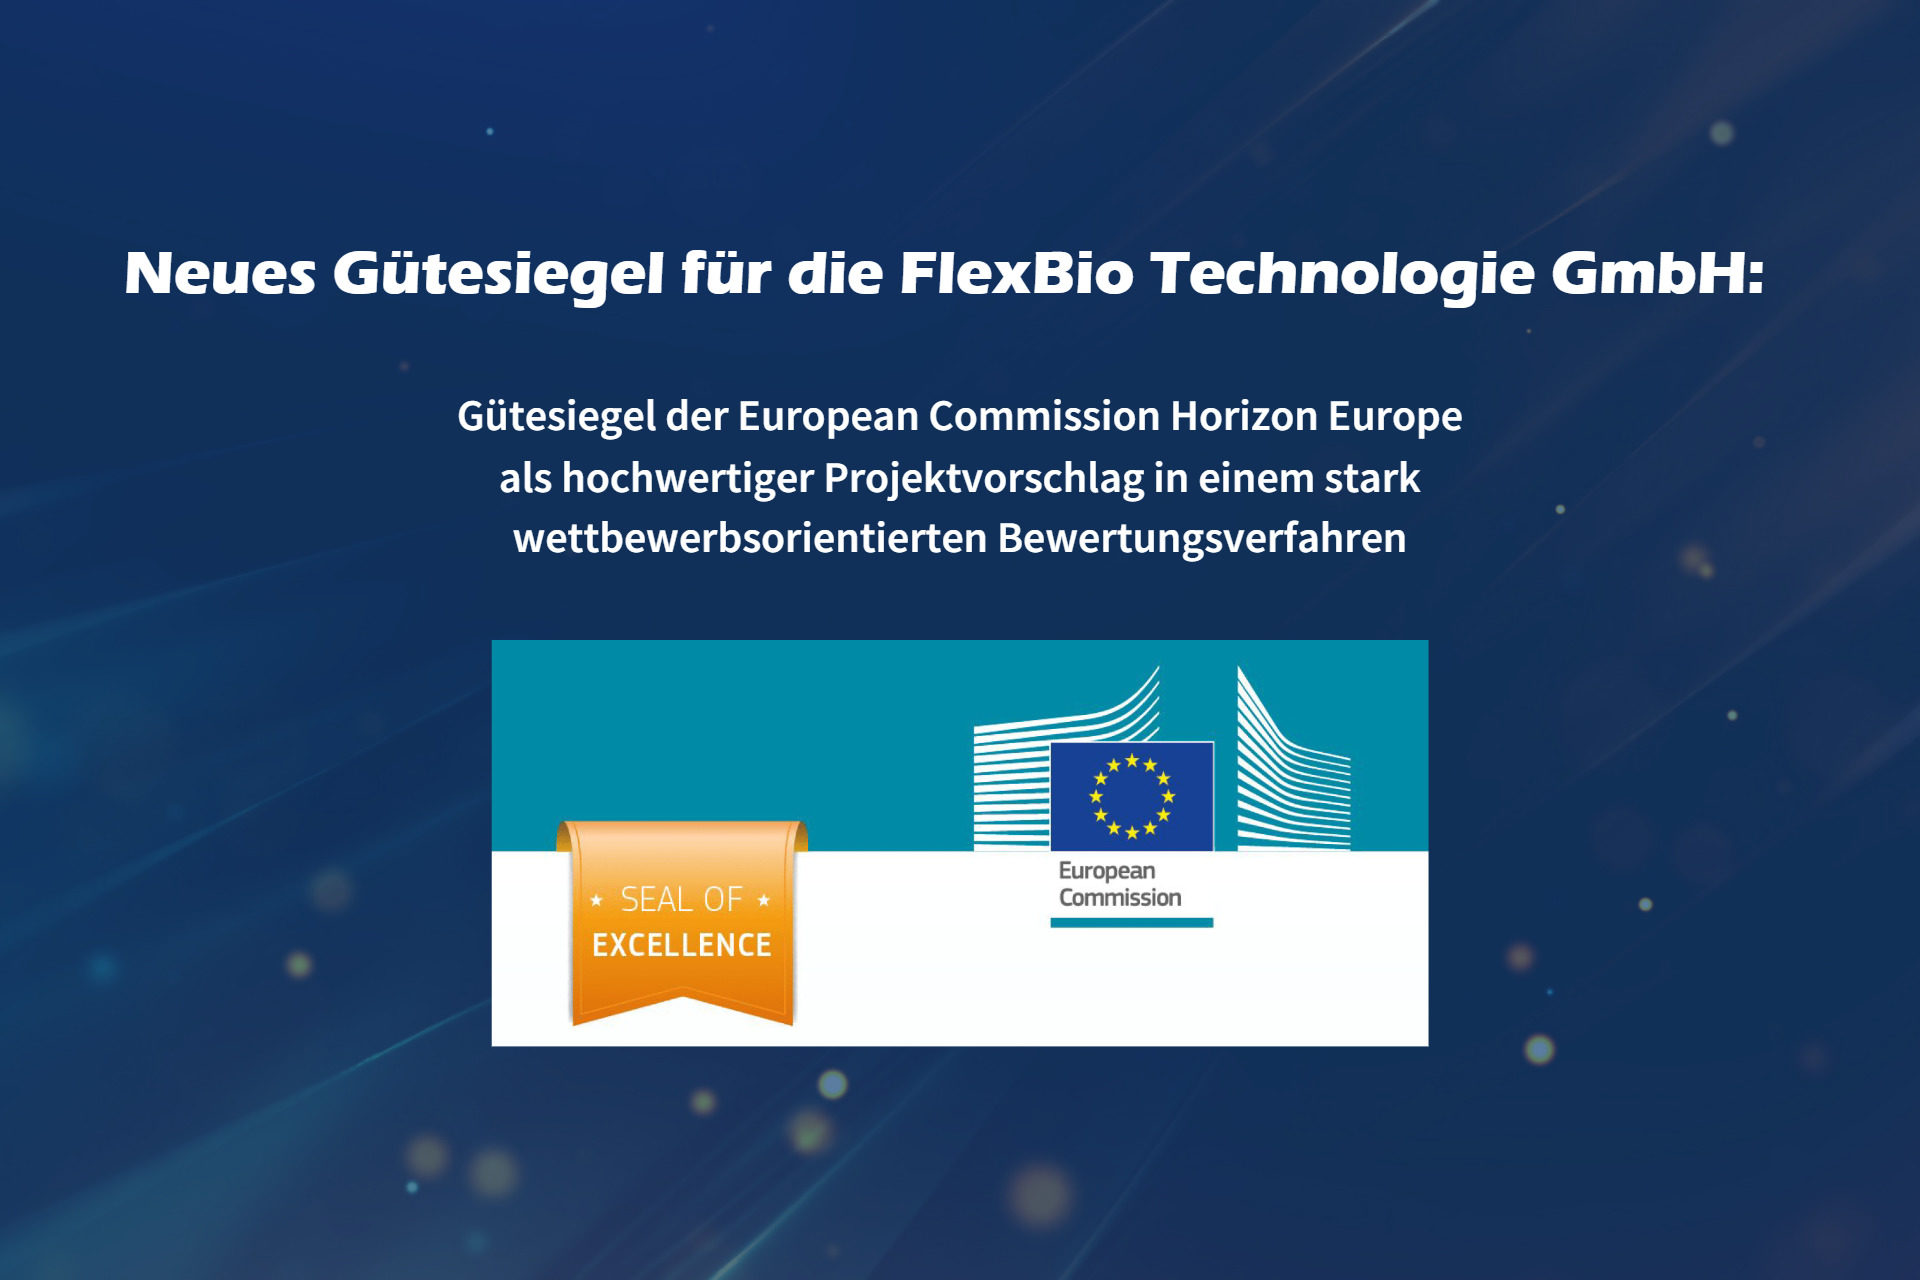 Neues Gütesiegel für die FlexBio Technologie GmbH: Seal of Excellence